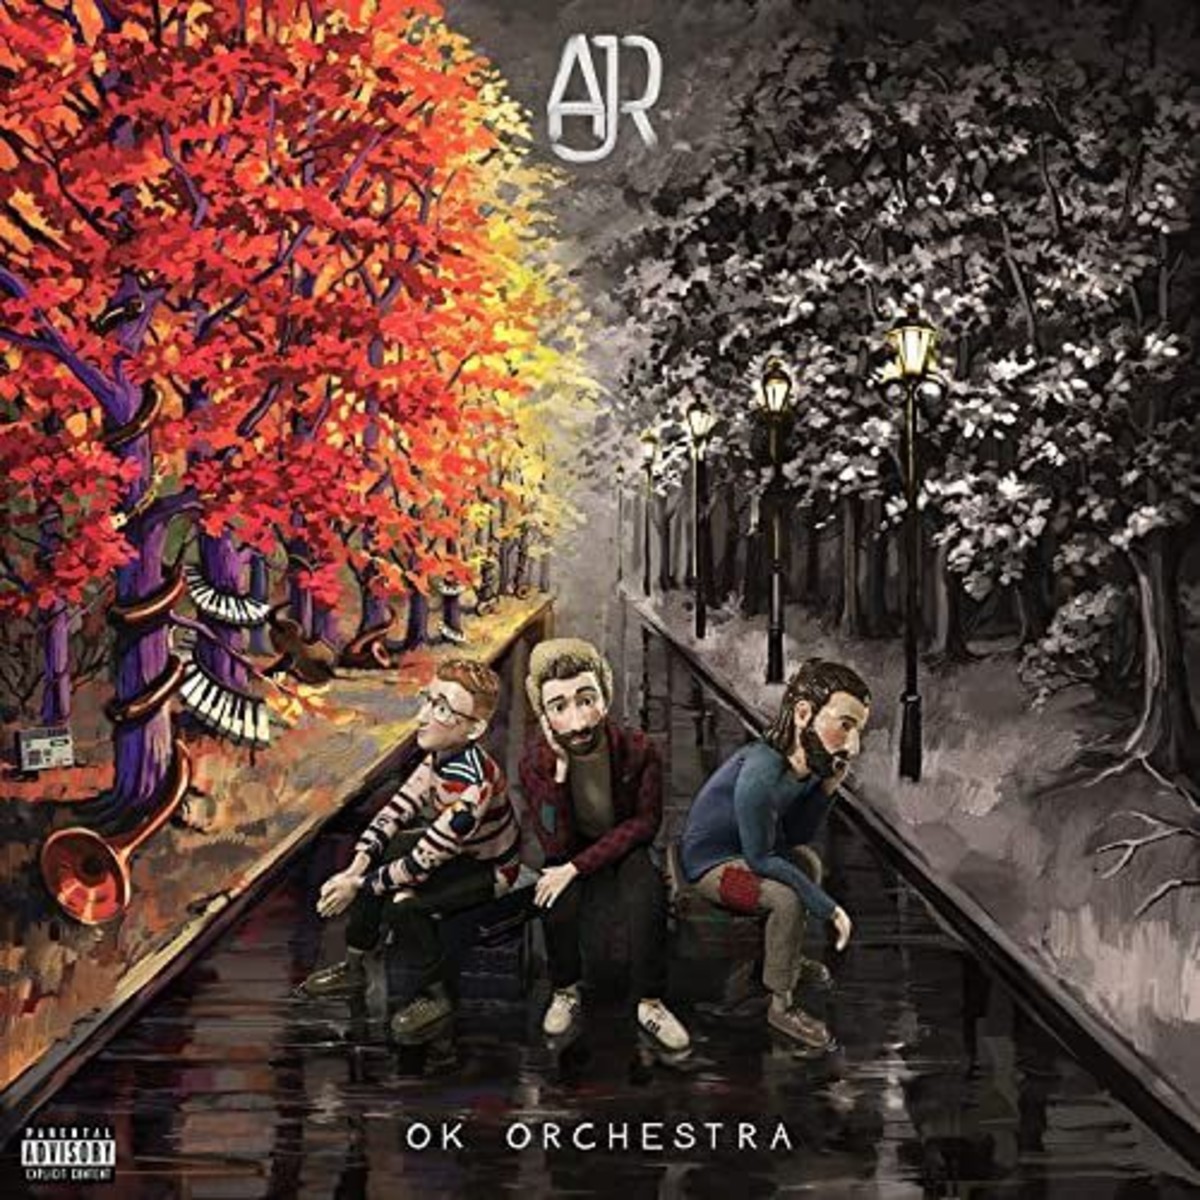 AJR “Ok Orchestra” Album Review